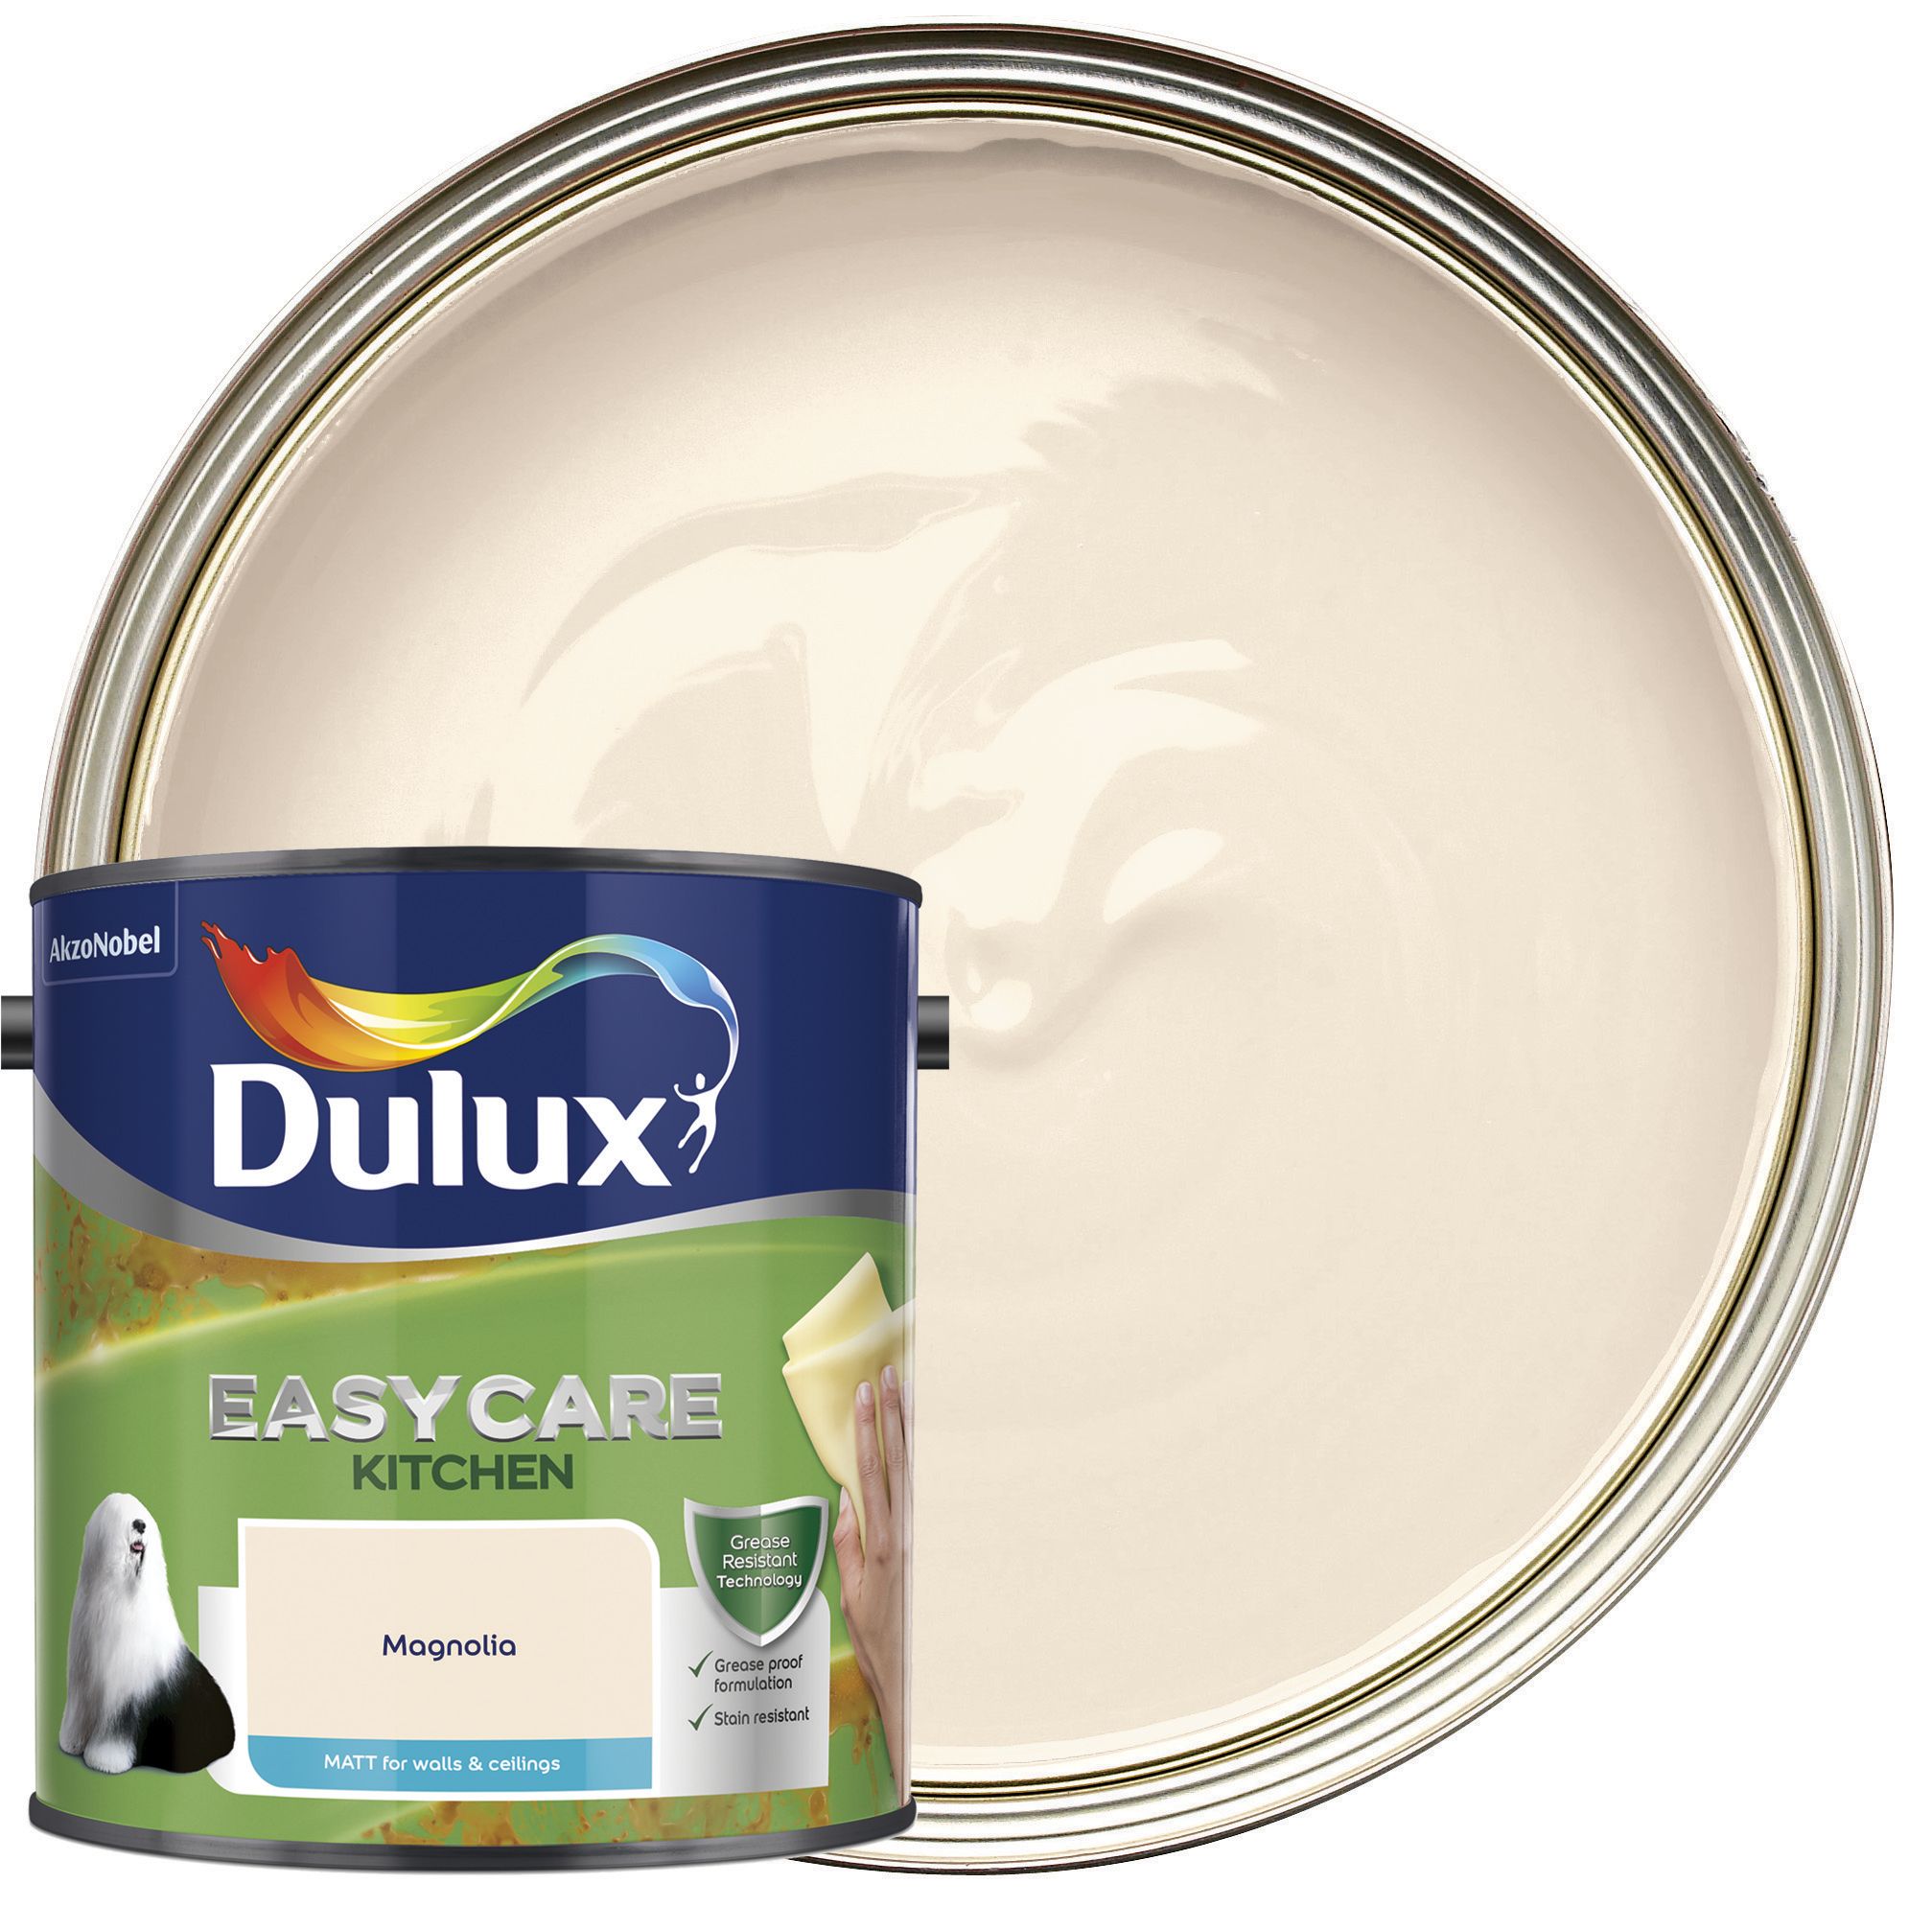 Dulux Easycare Kitchen Matt Emulsion Paint - Magnolia - 2.5L